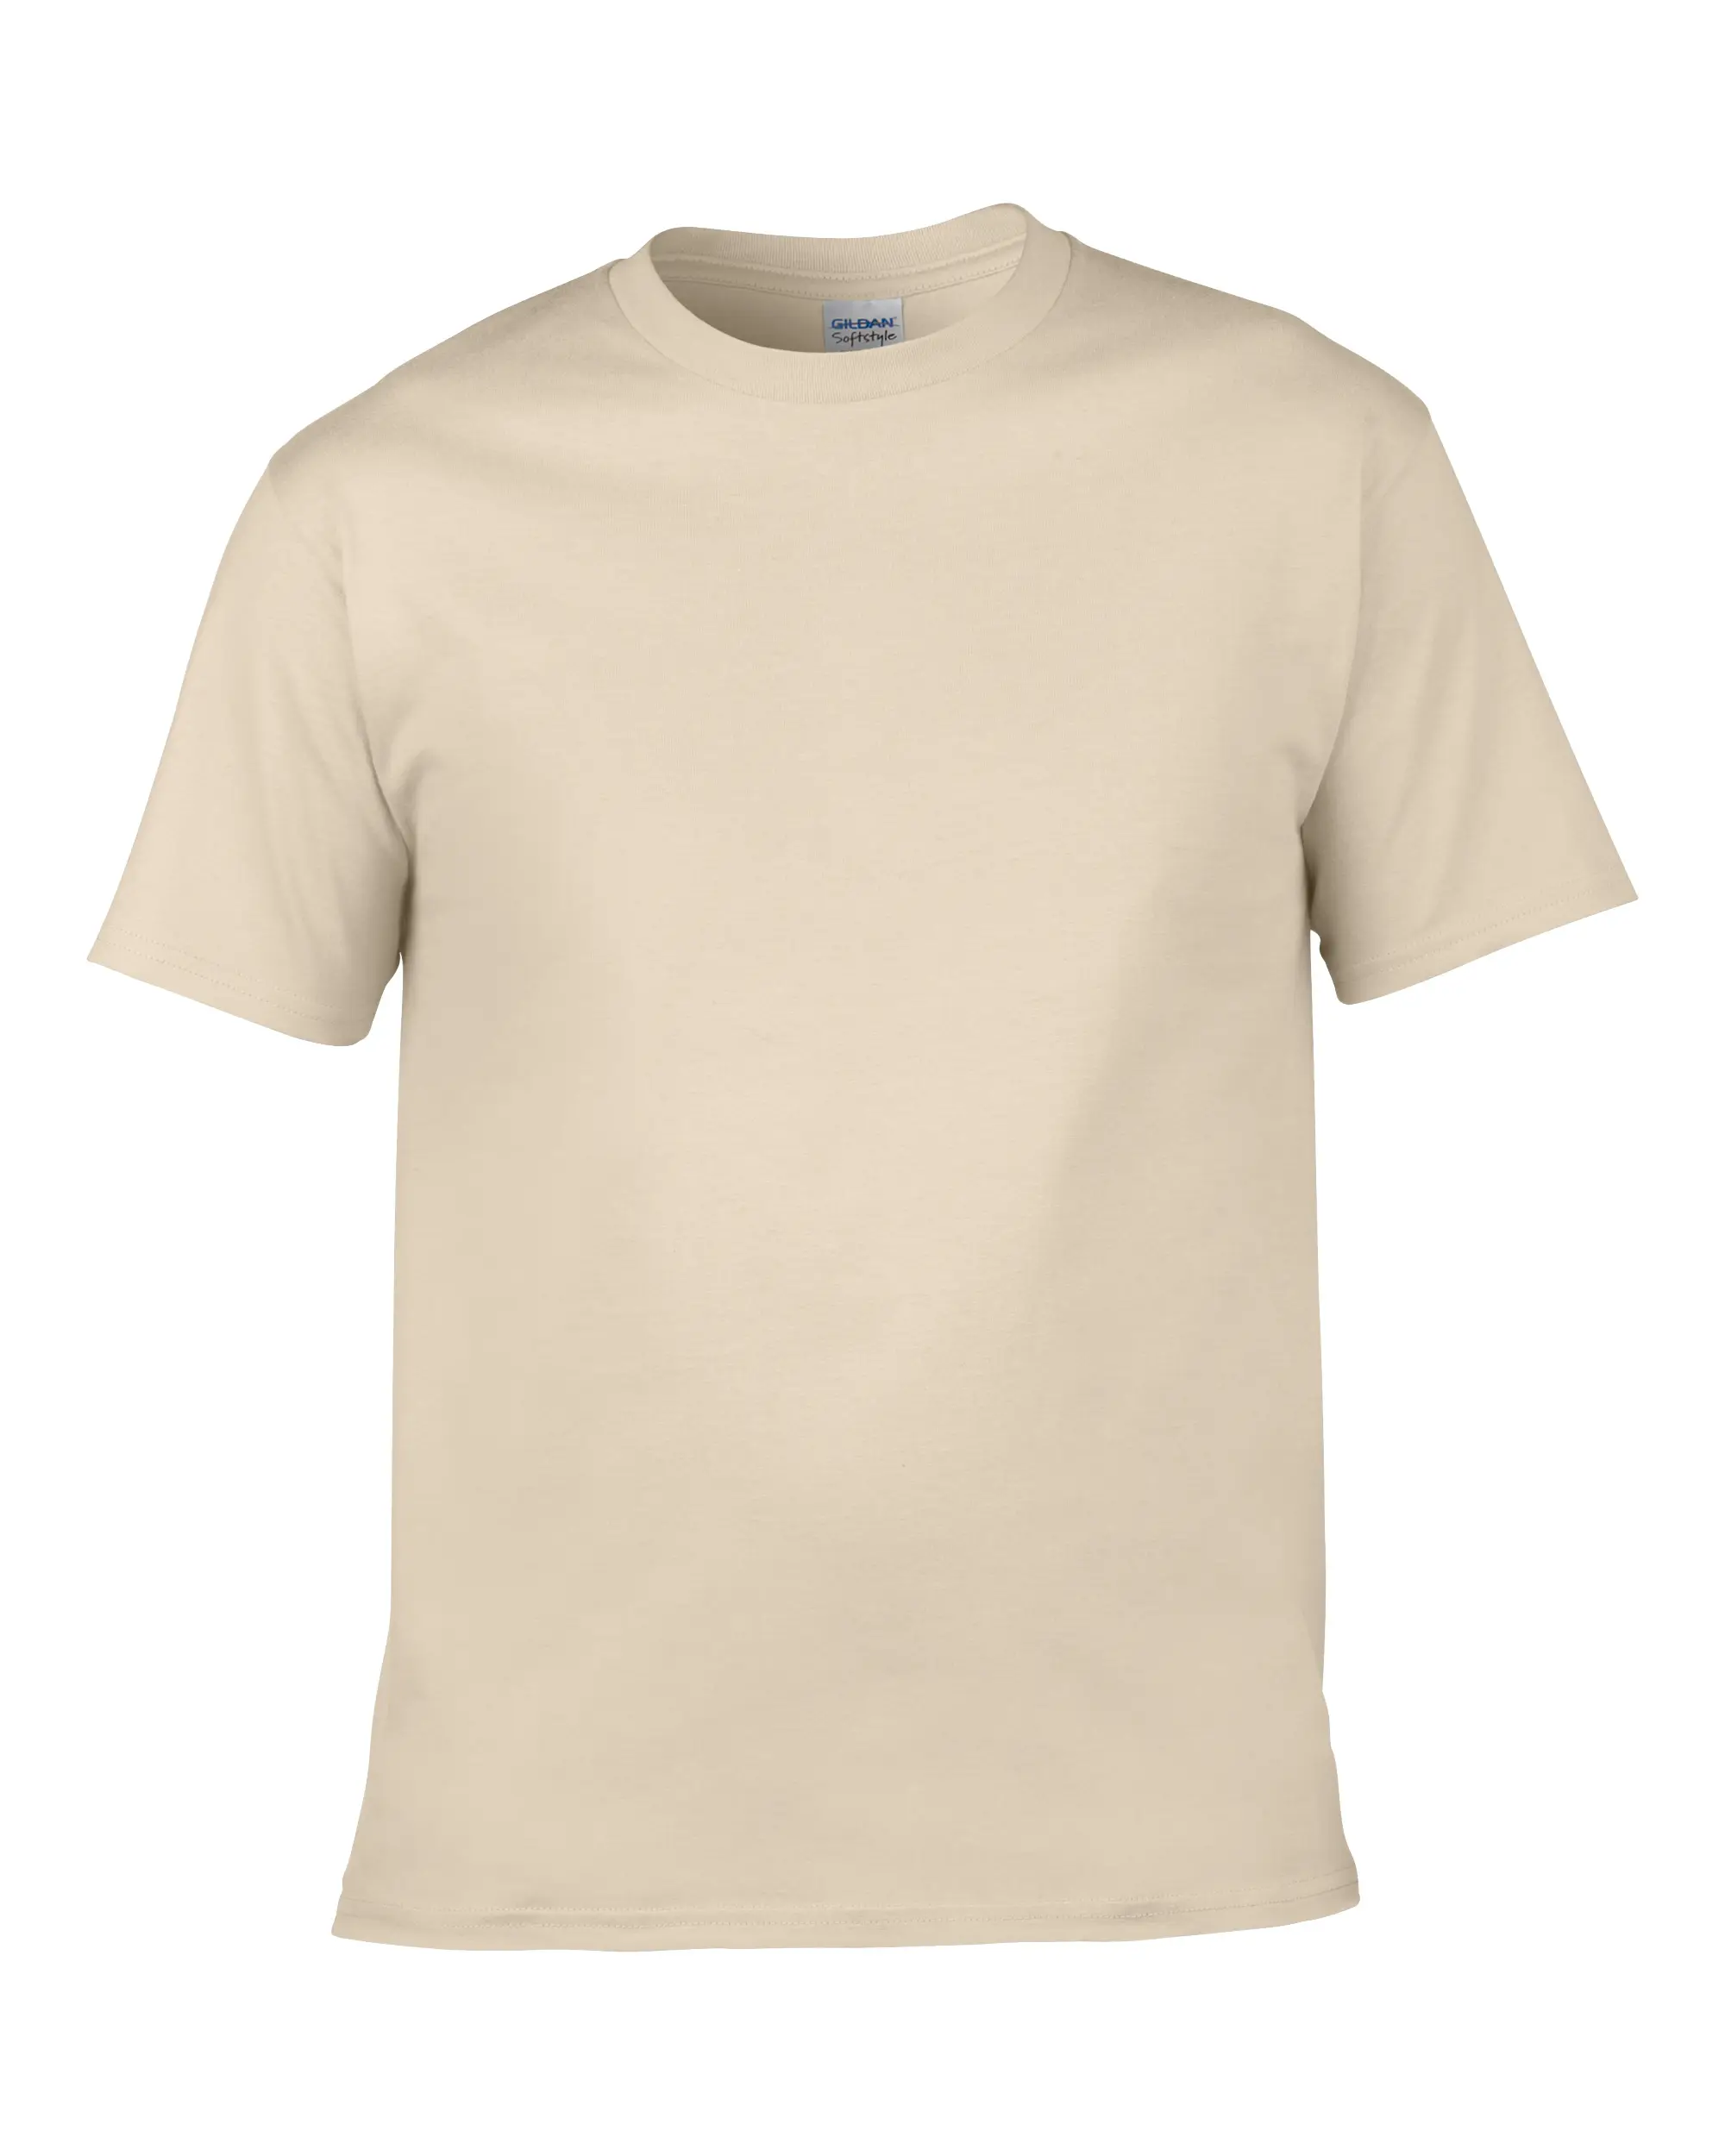 Alta calidad 100% de algodón personalizado etiqueta privada para hombre Camiseta de impresión de su logotipo de la marca T camisa